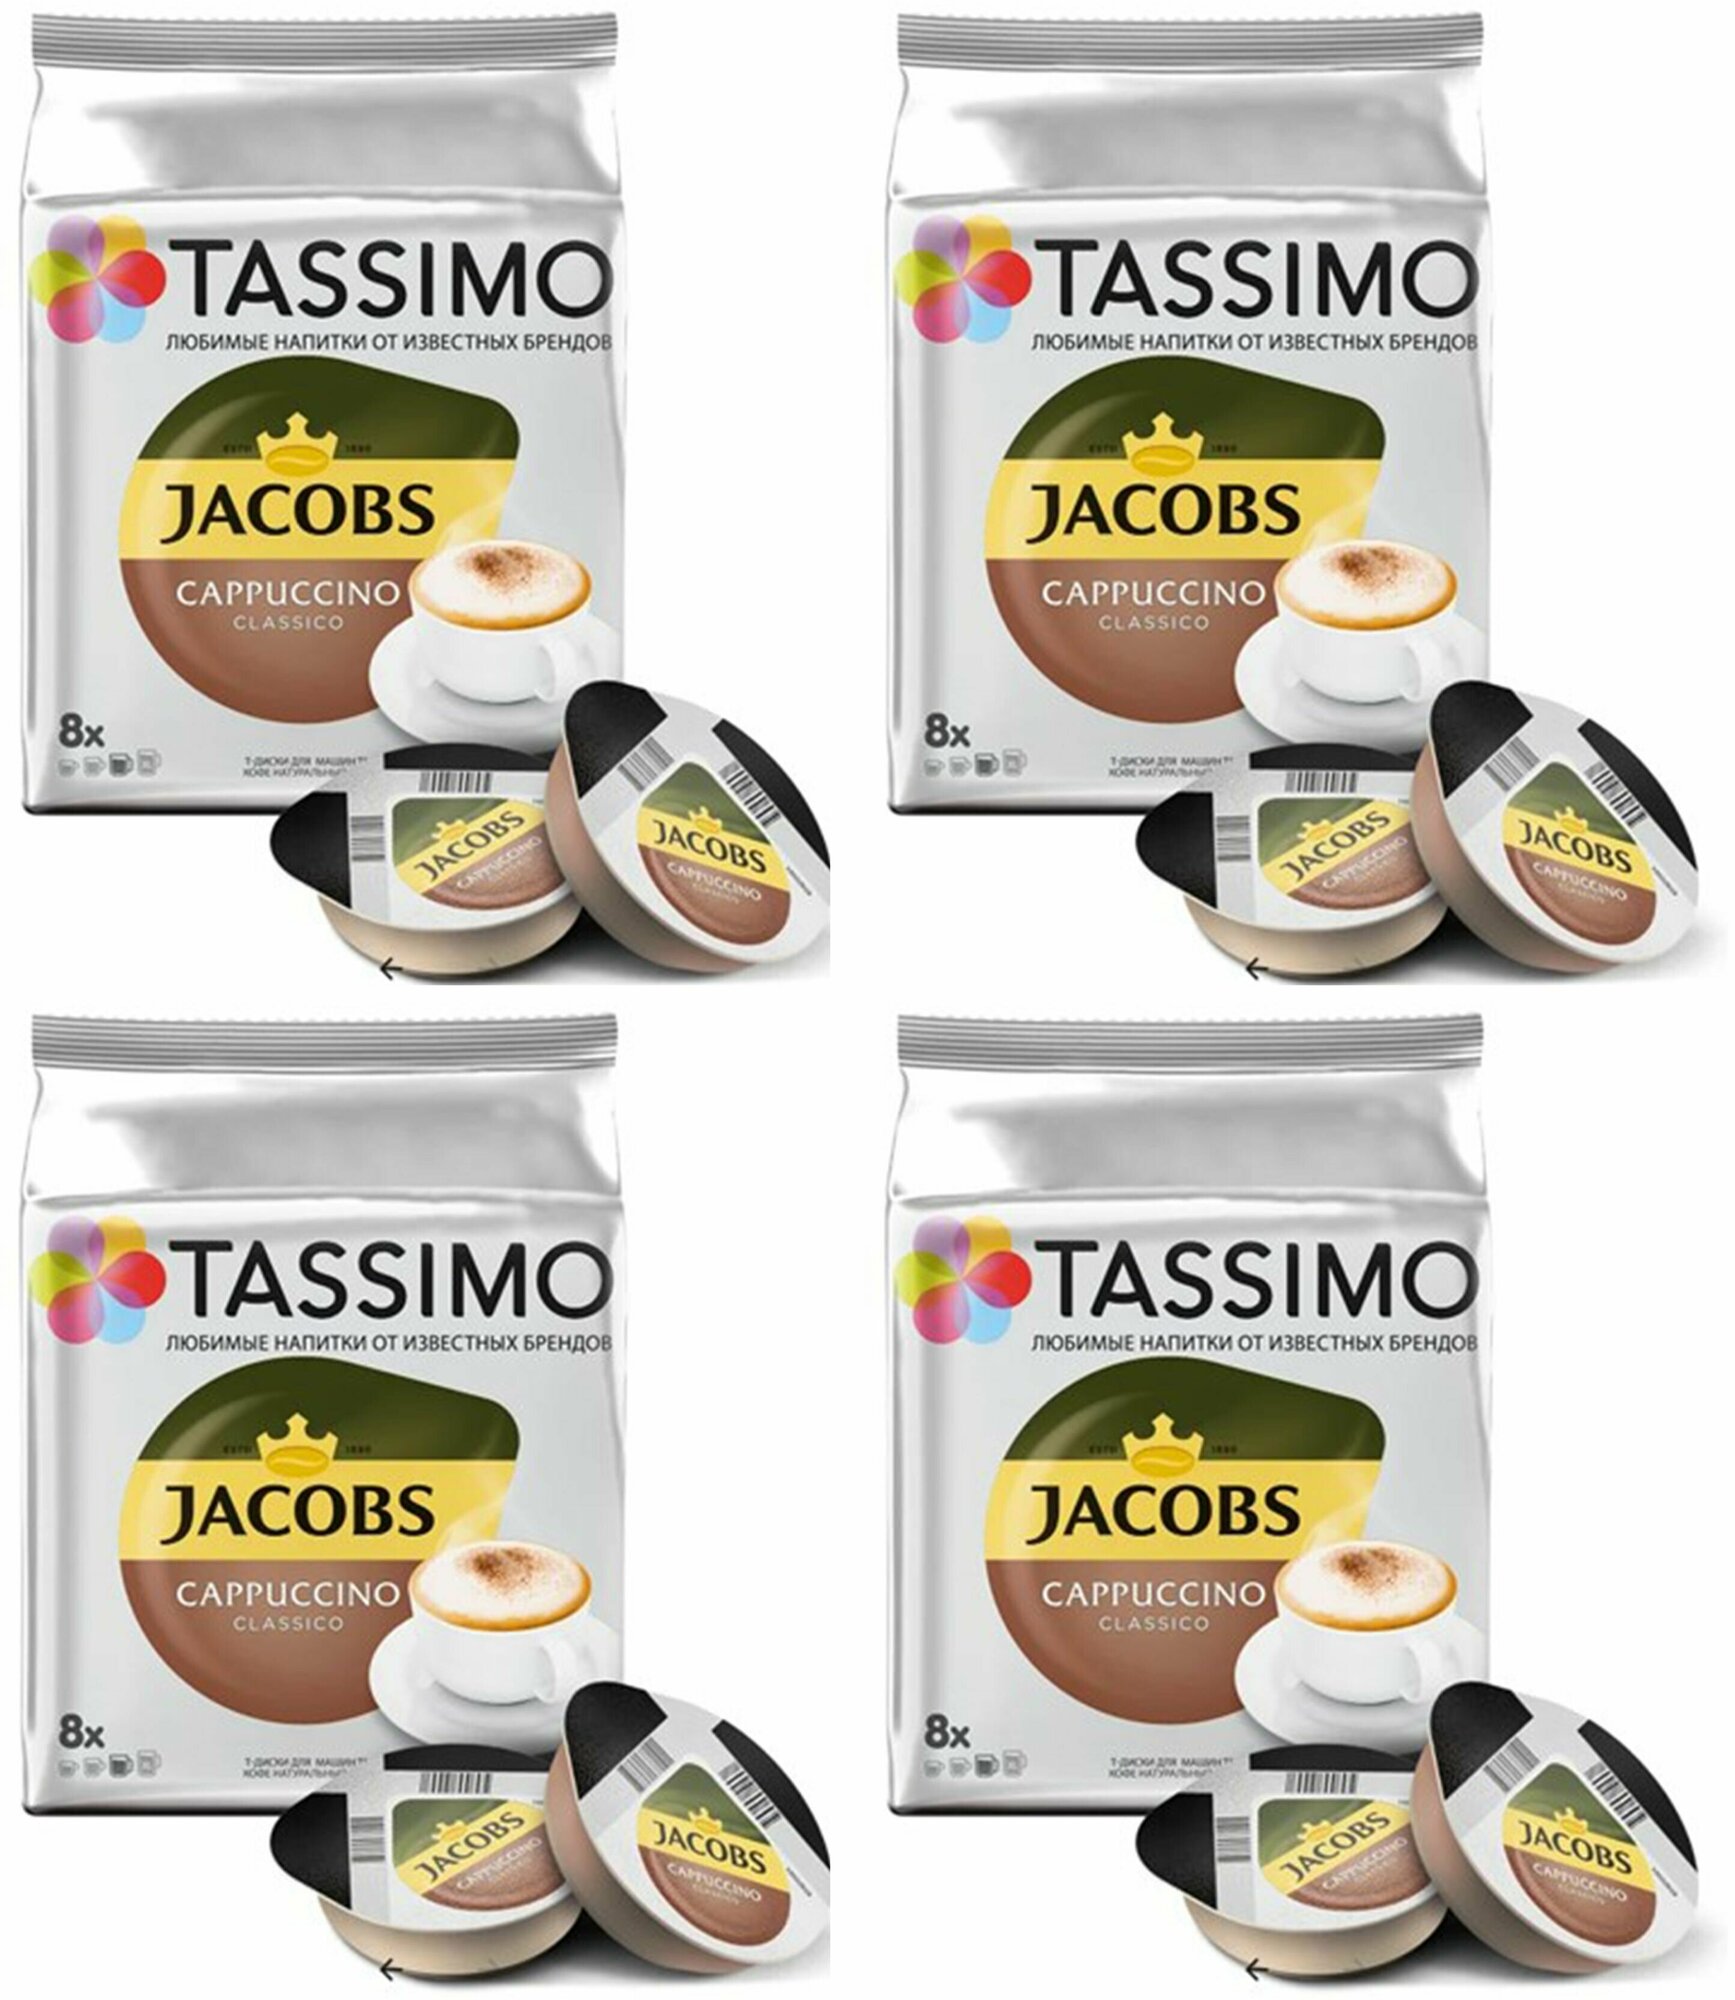 Кофе в капсулах Tassimo Jacobs Cappuccino 8шт, 4 упаковки